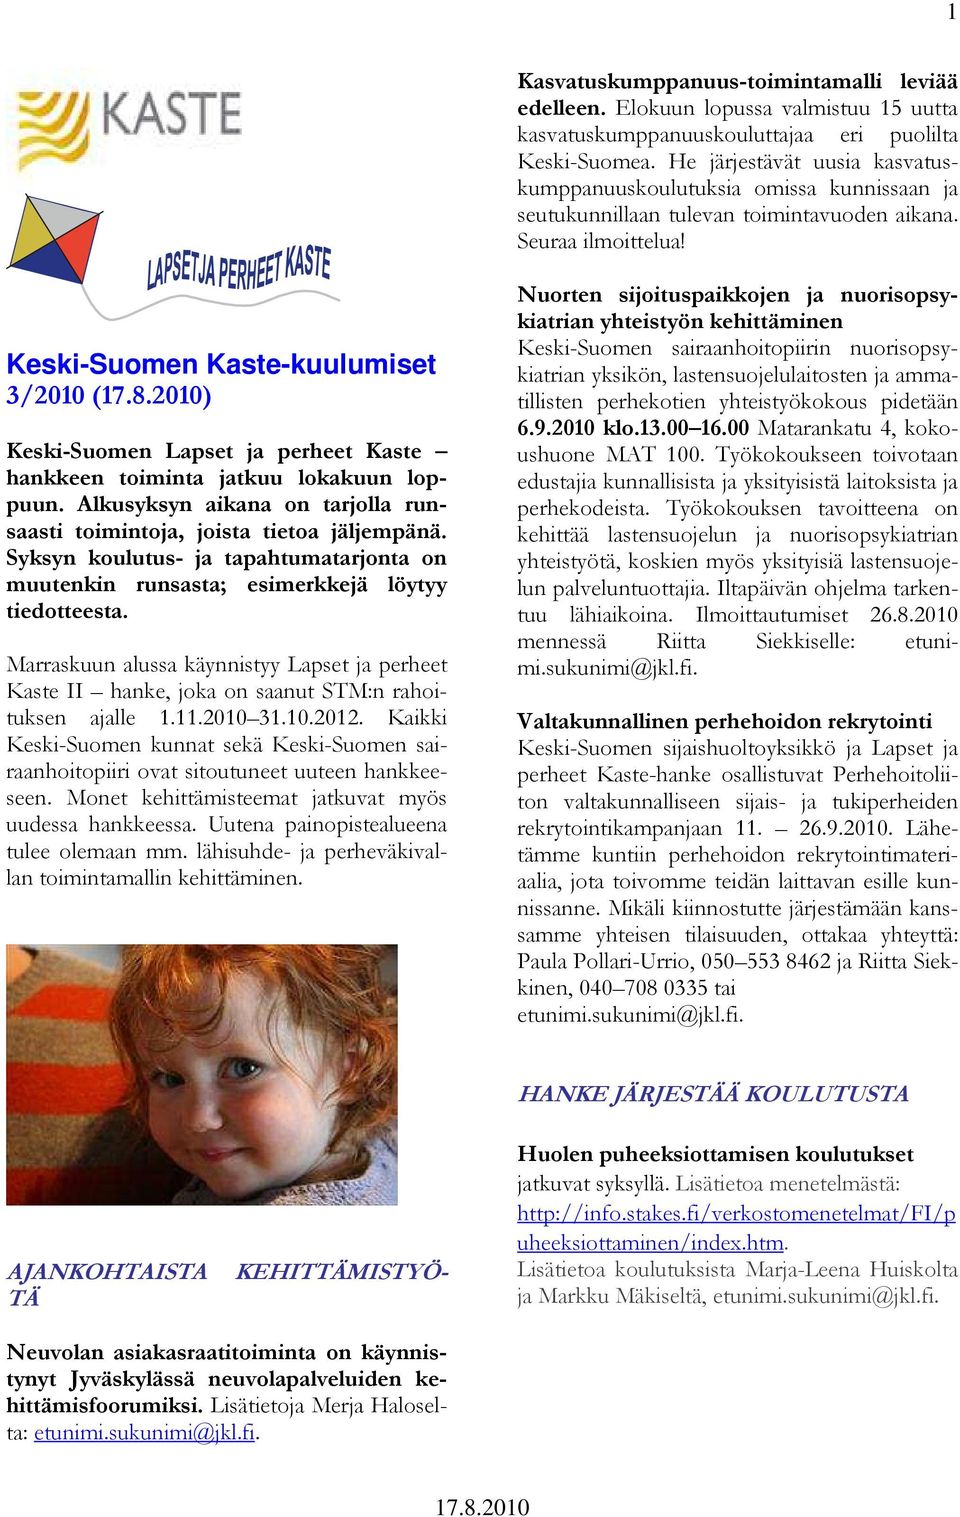 Keski-Suomen Kaste-kuulumiset 3/2010 () Keski-Suomen Lapset ja perheet Kaste hankkeen toiminta jatkuu lokakuun loppuun. Alkusyksyn aikana on tarjolla runsaasti toimintoja, joista tietoa jäljempänä.